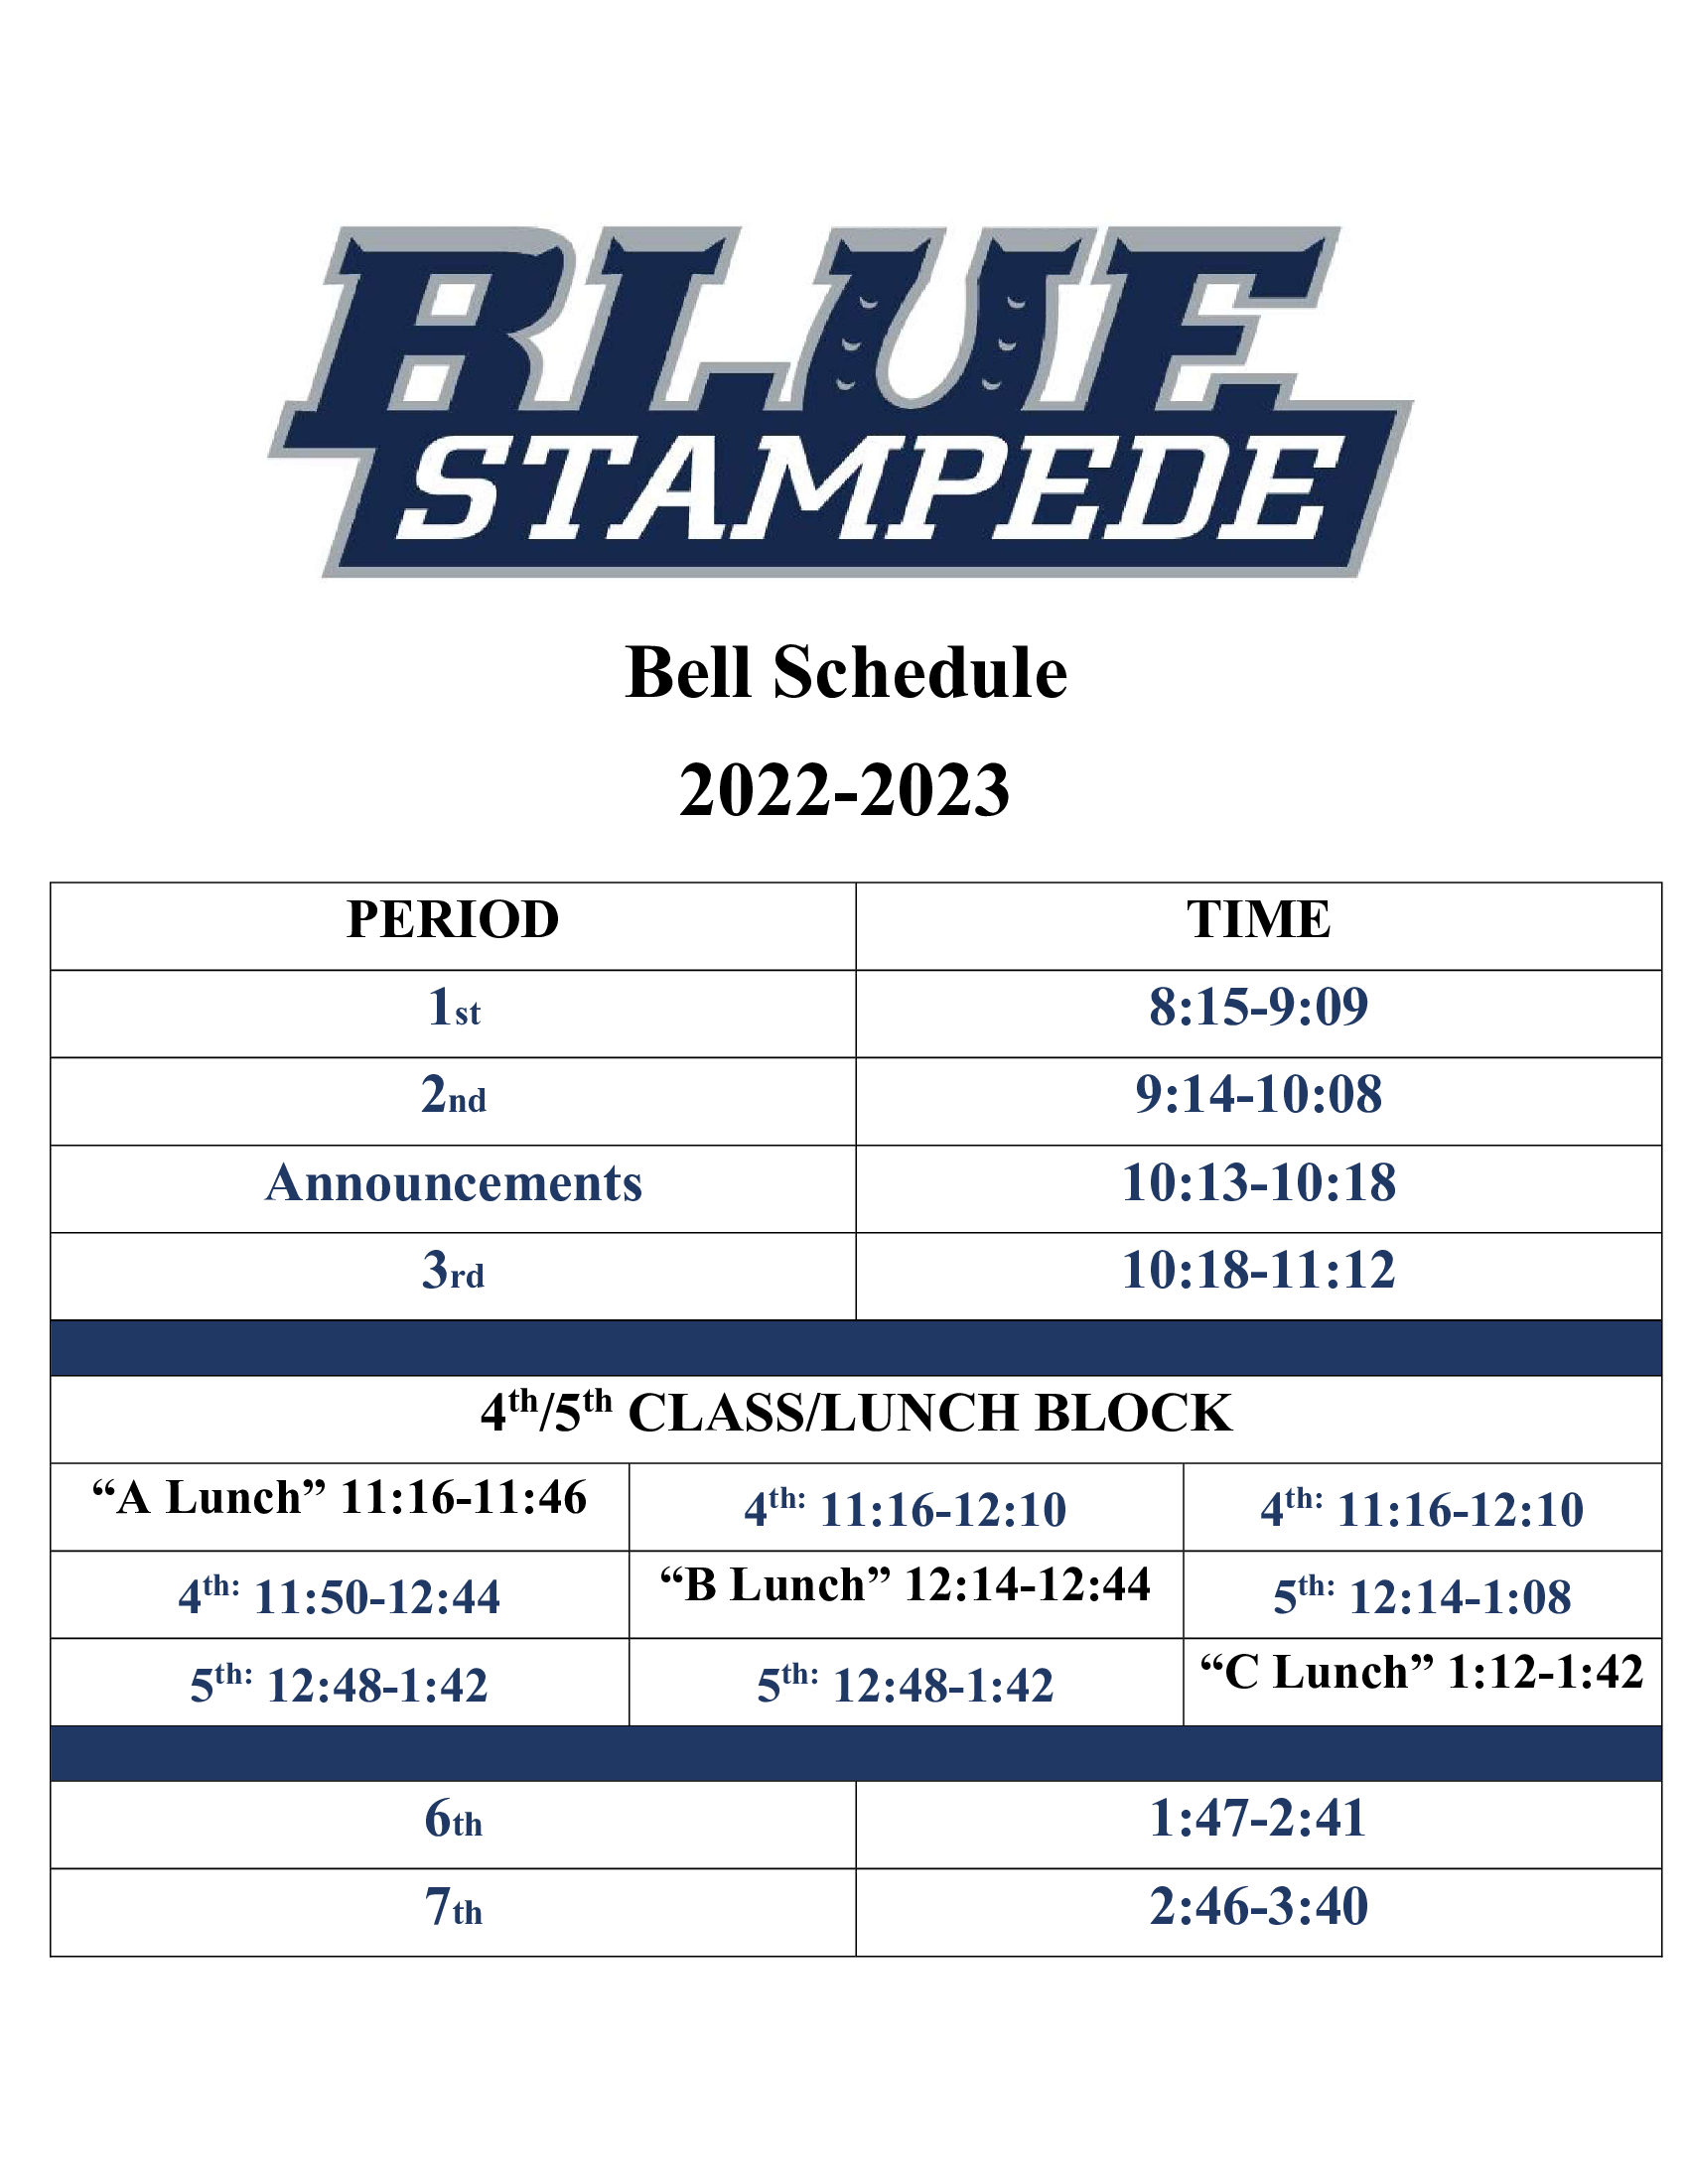 Bell Schedule 2022 (3) 1 of 1